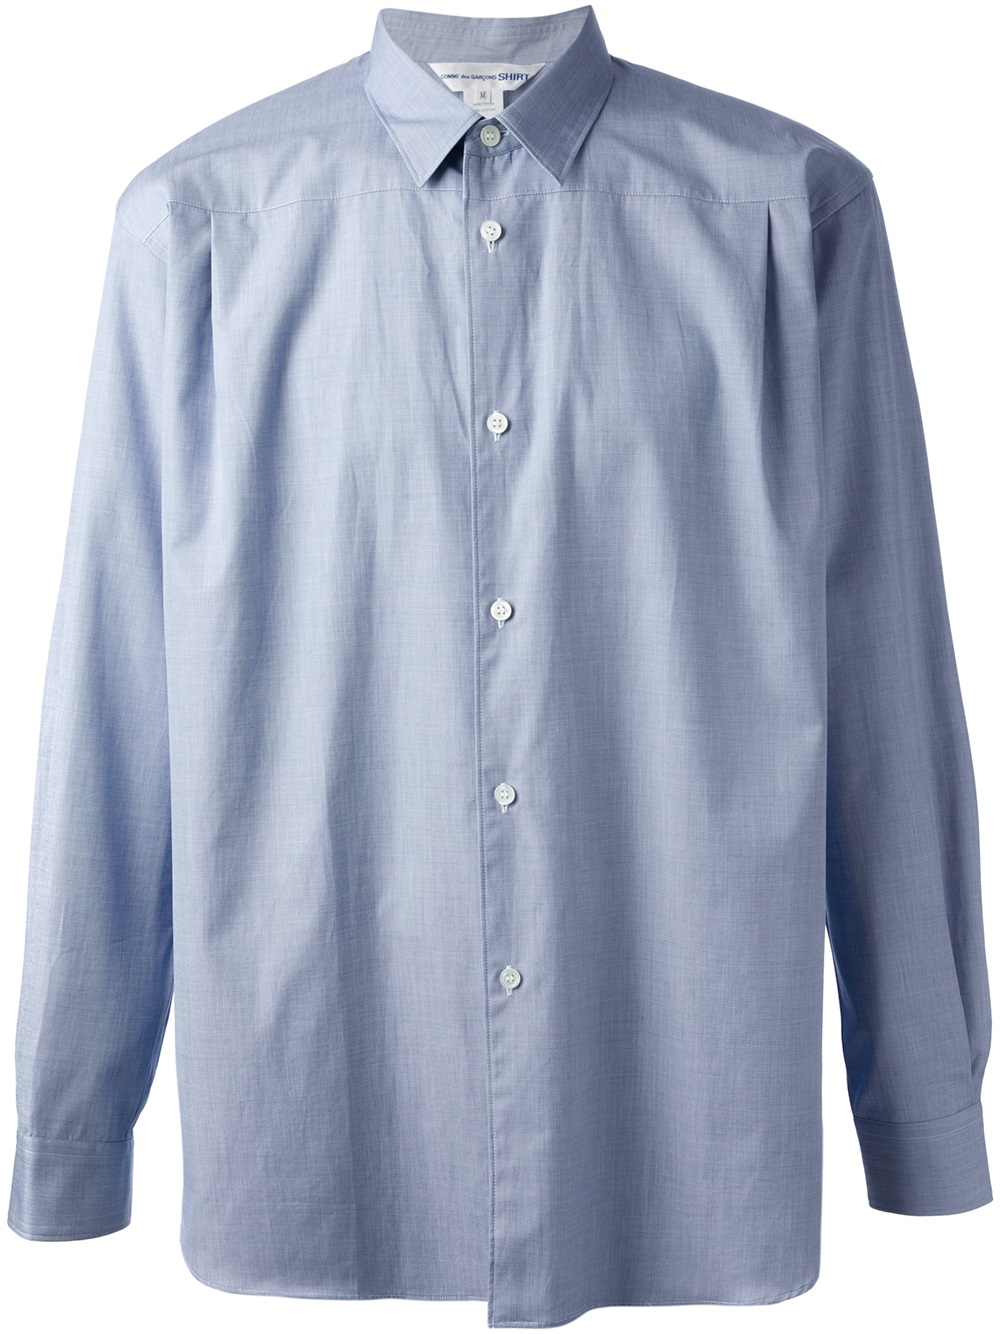 Comme Des Garçons Back Button Shirt in Blue for Men - Lyst